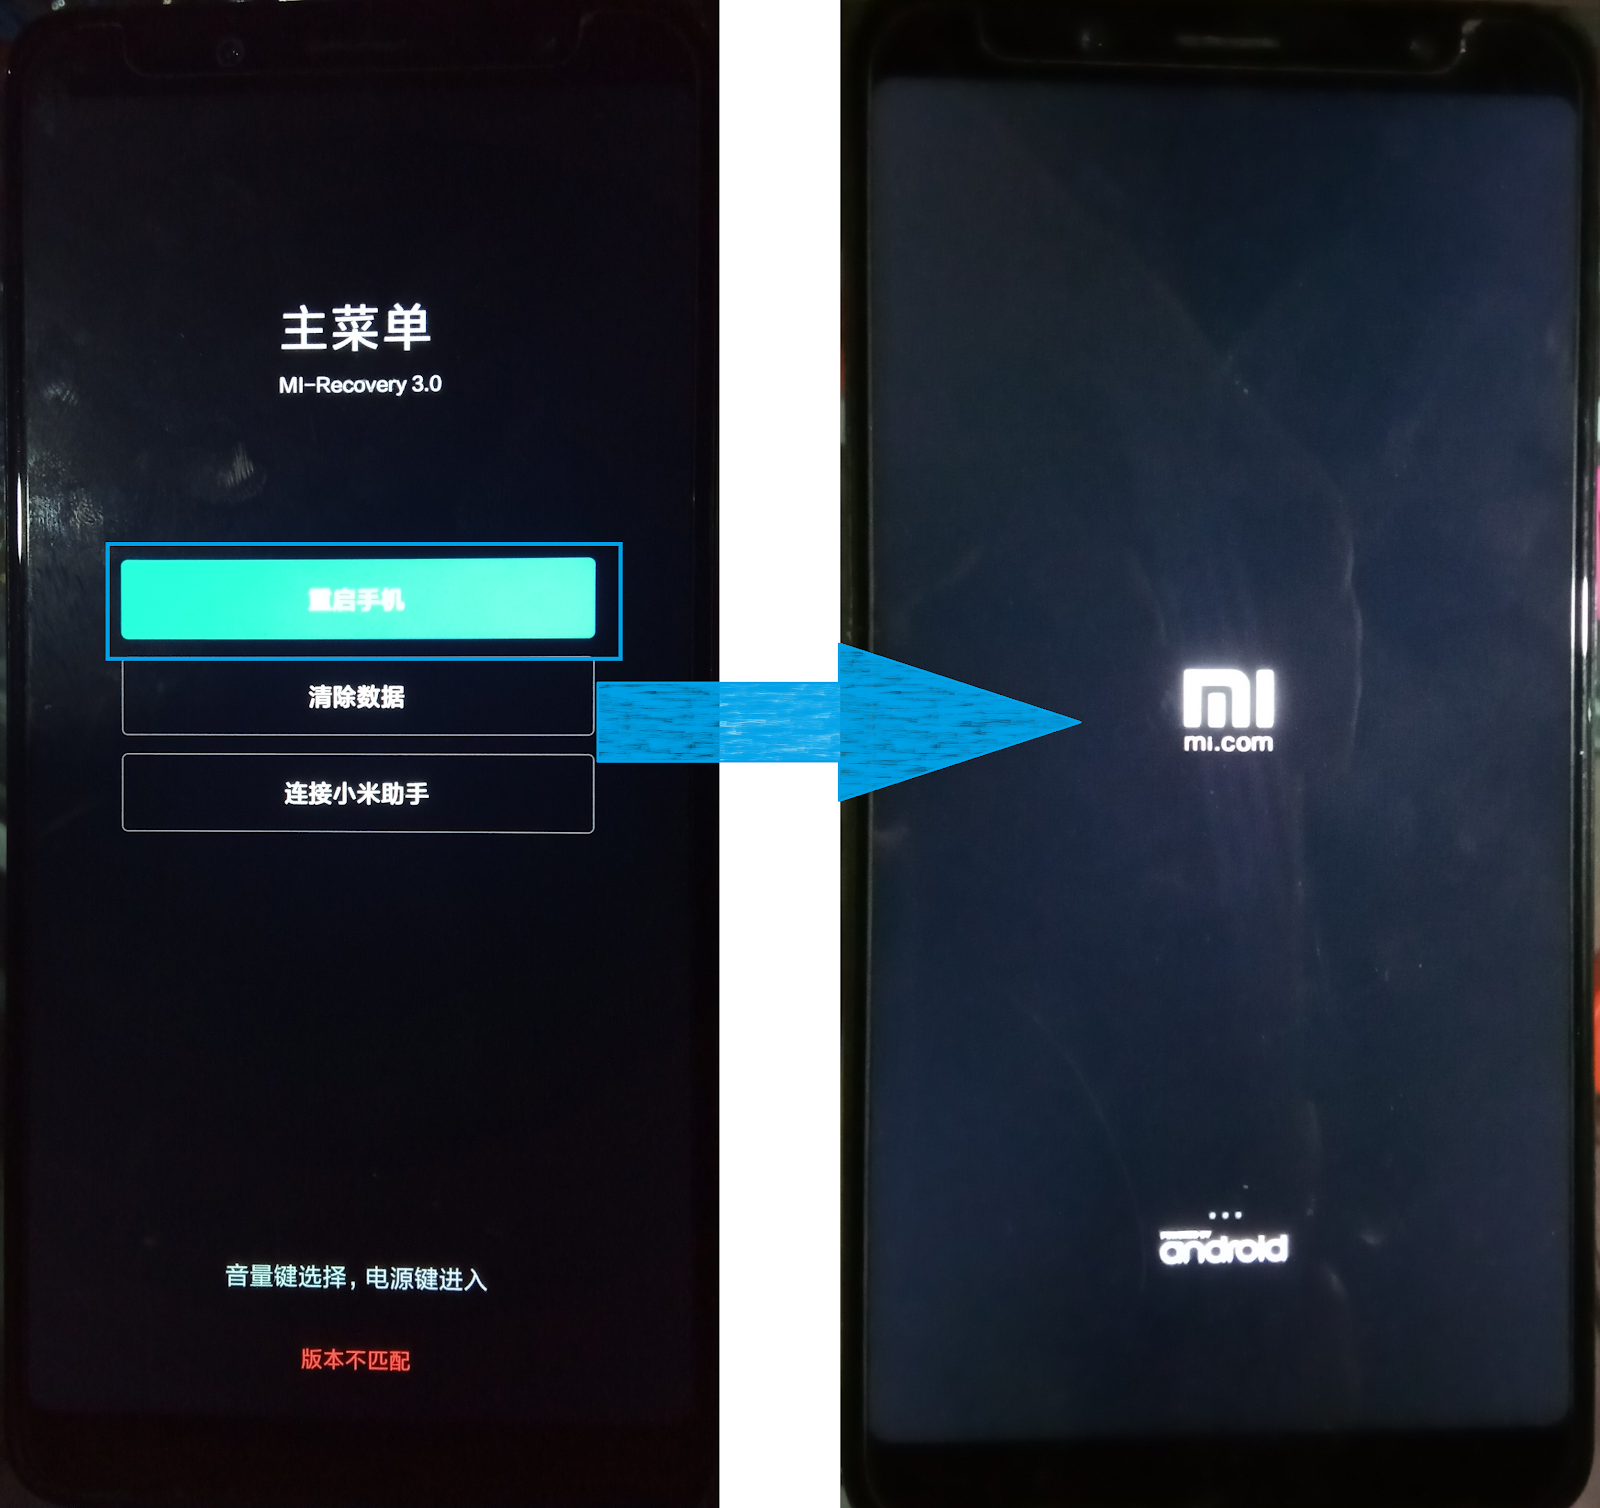 Режим miui recovery 5.0. Рекавери на Xiaomi. Xiaomi mi Recovery 3 0. Mi Recovery 3.0 на китайском.